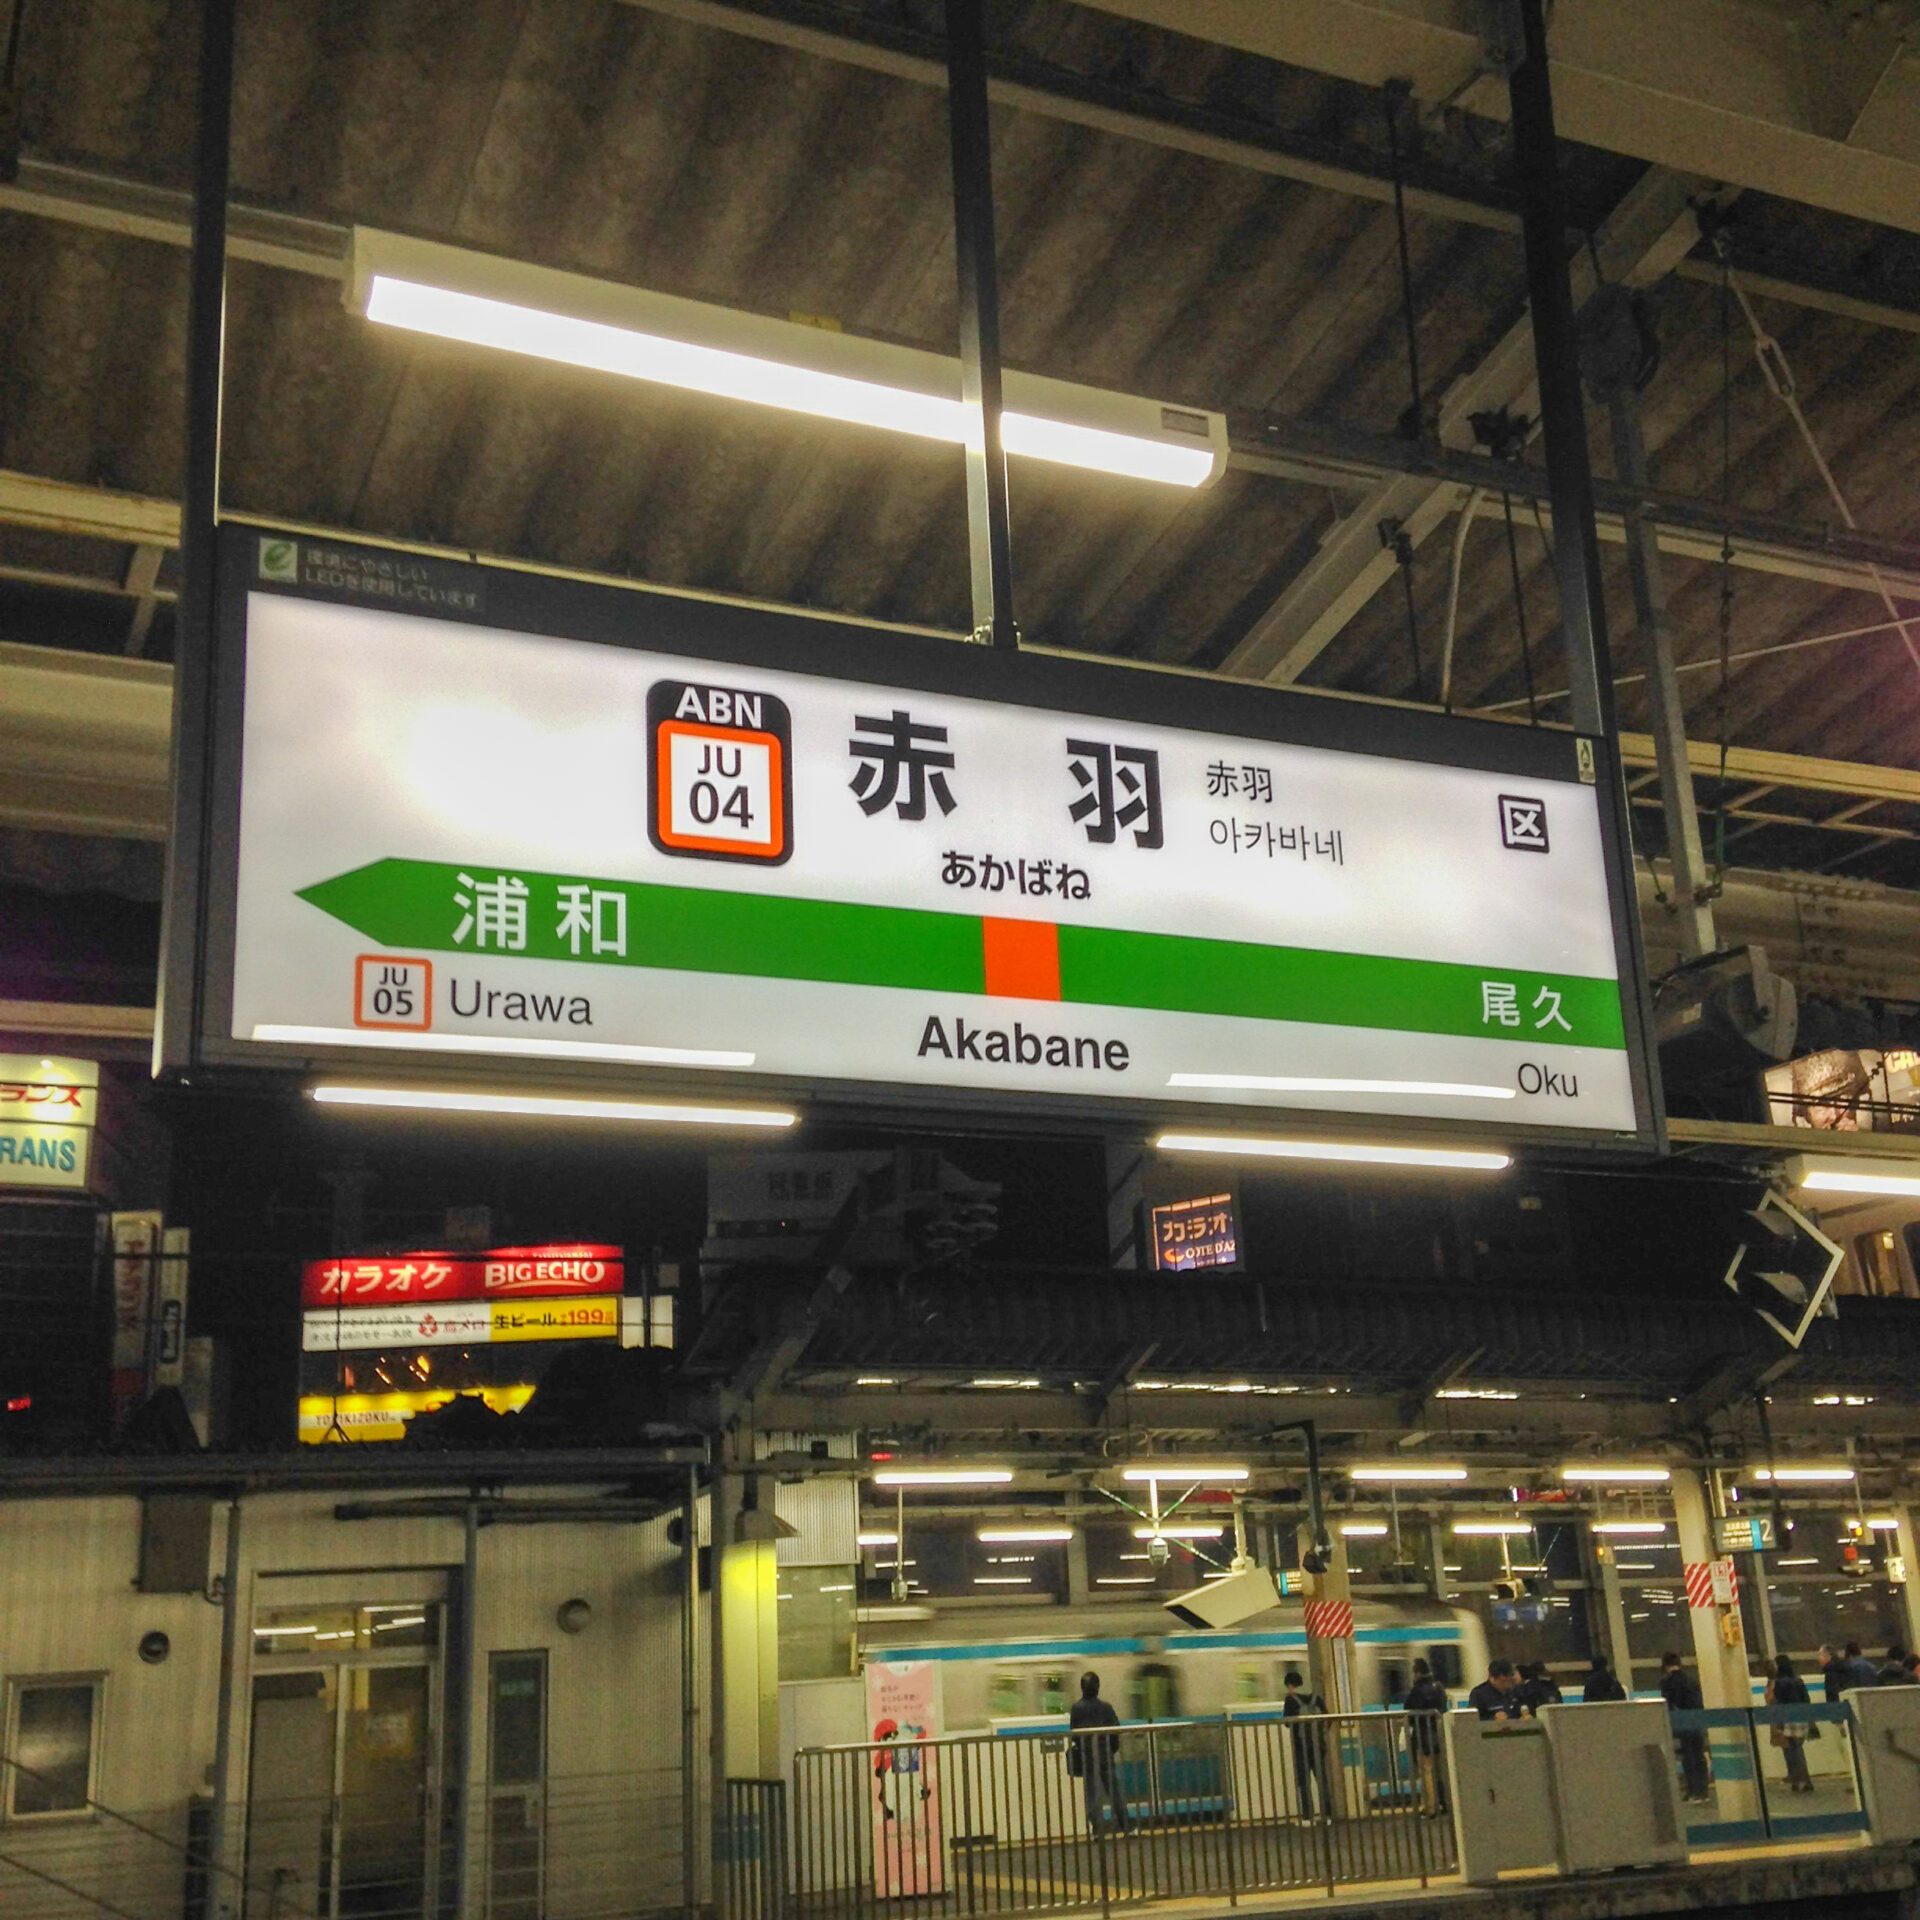 赤羽駅駅名標